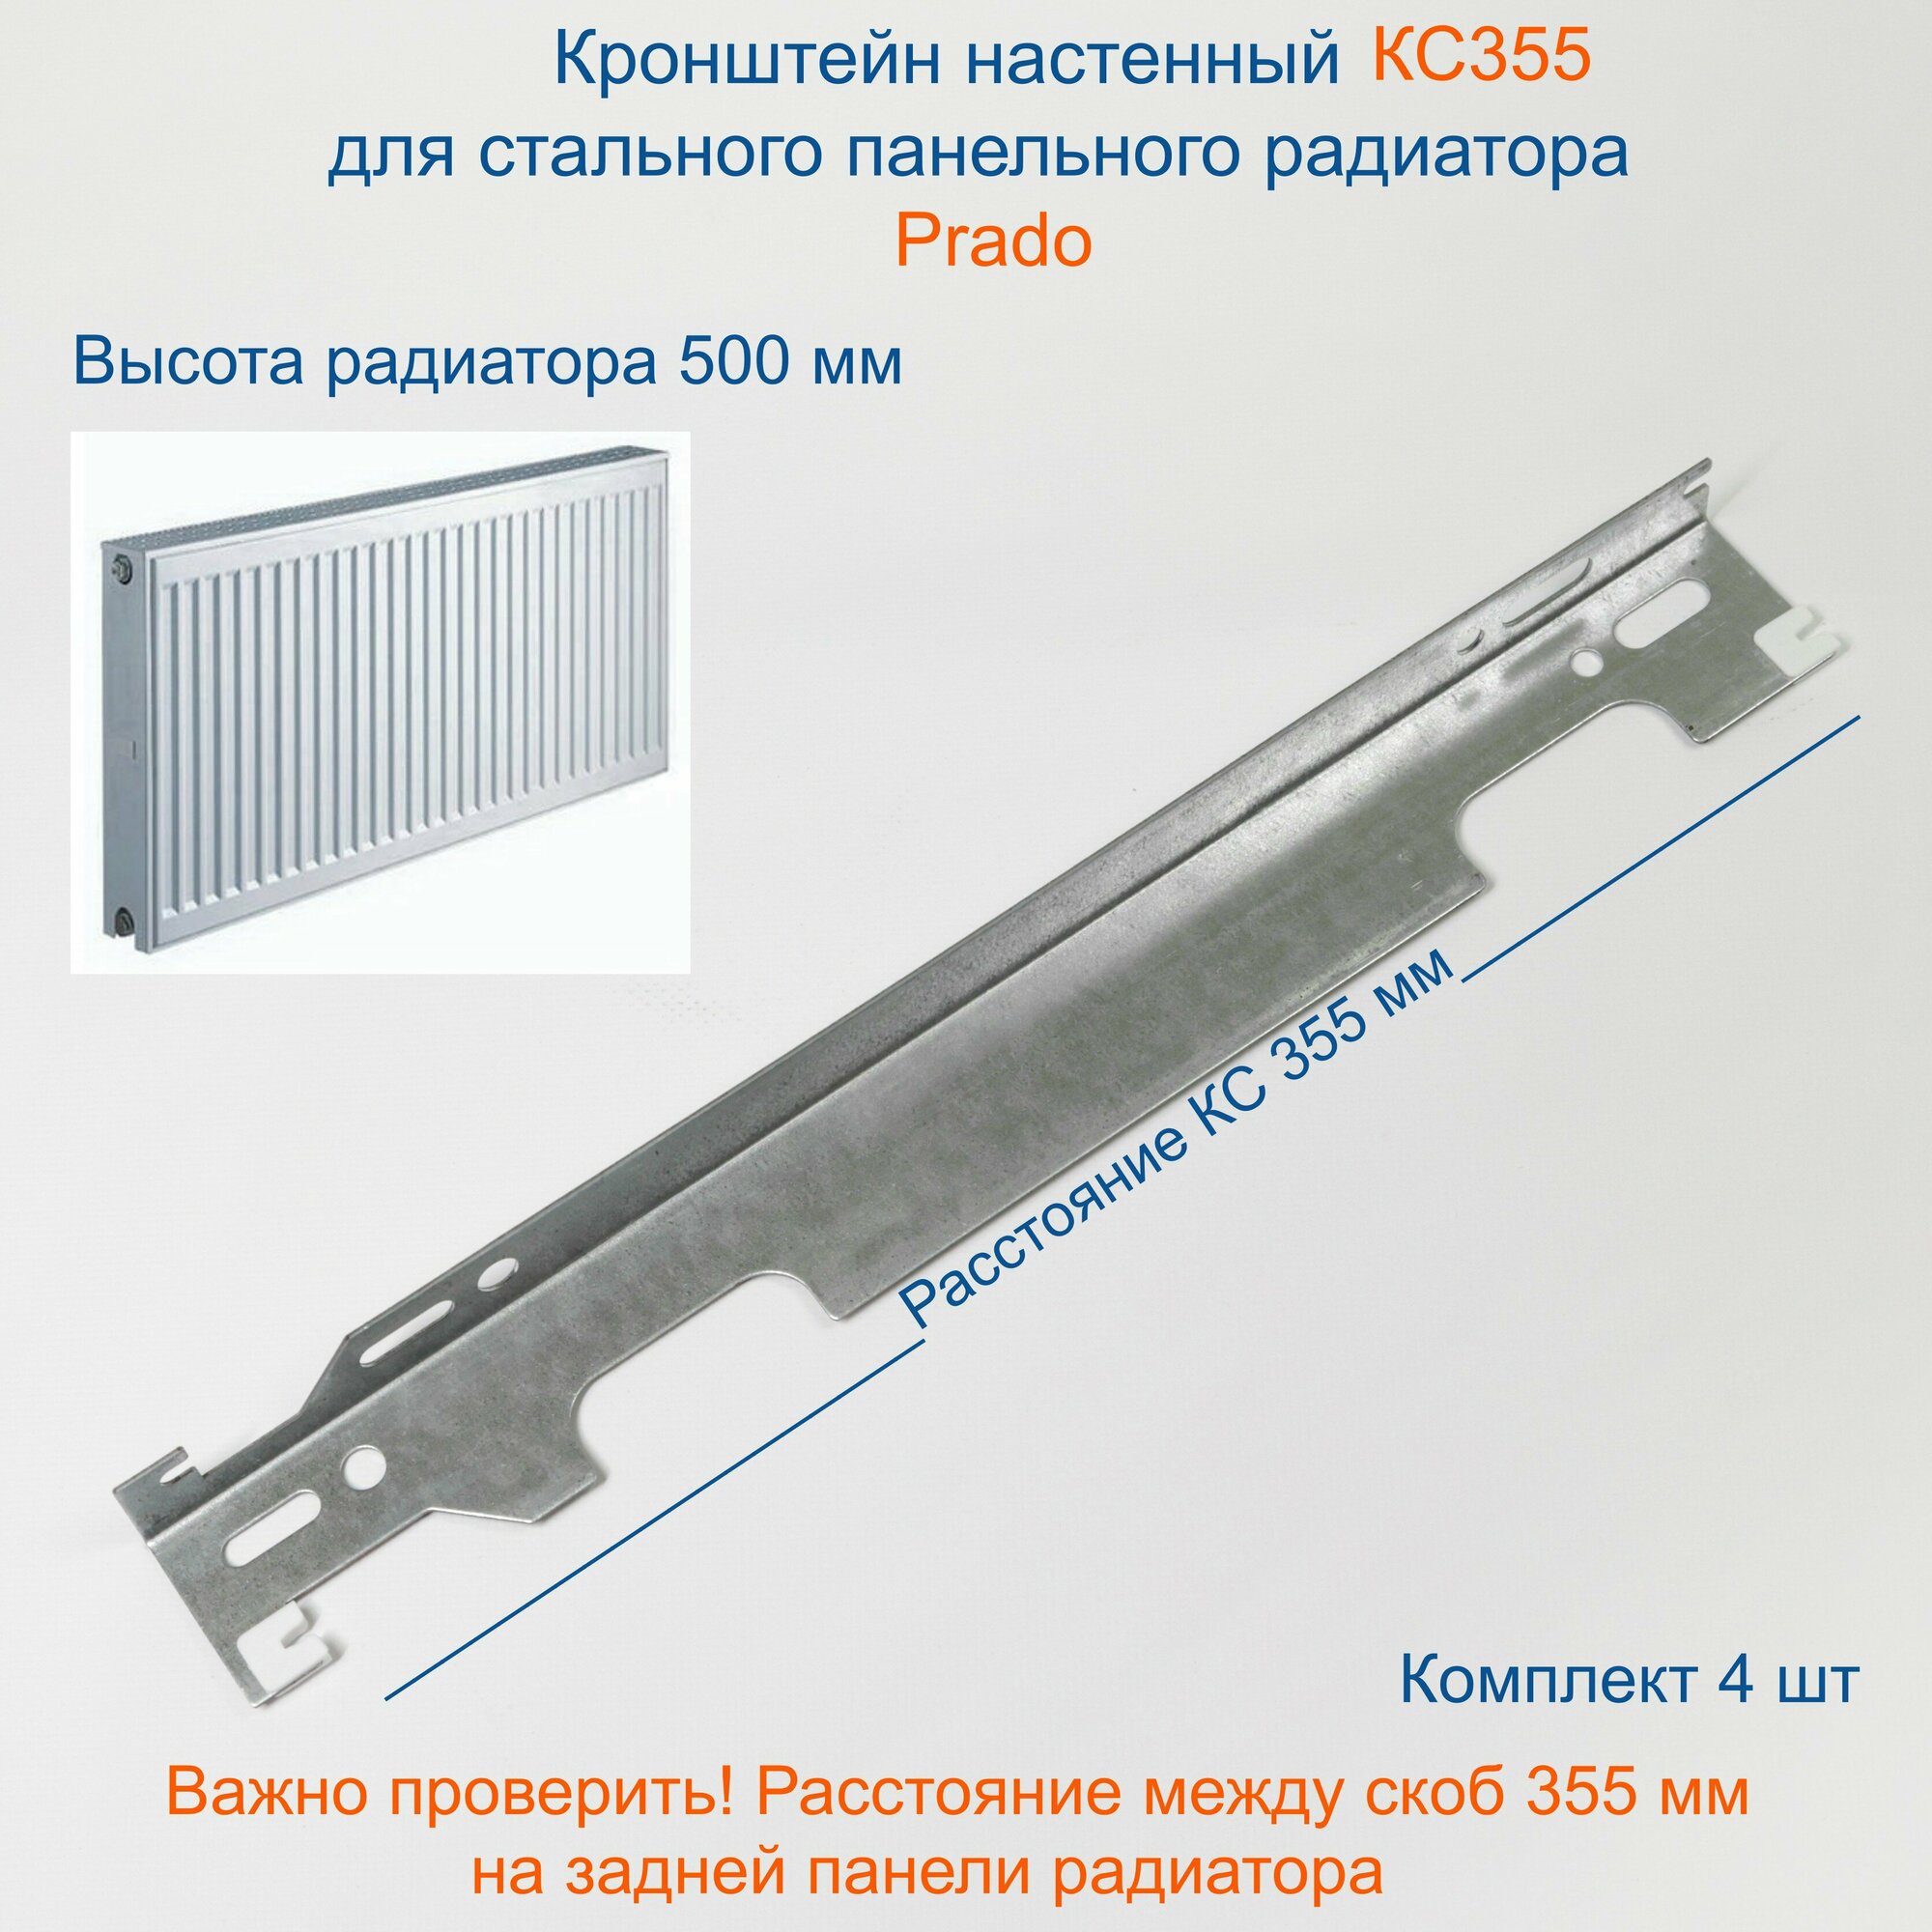 Кронштейн настенный Кайрос для стальных панельных радиаторов Прадо 500 мм (комплект 4 шт)